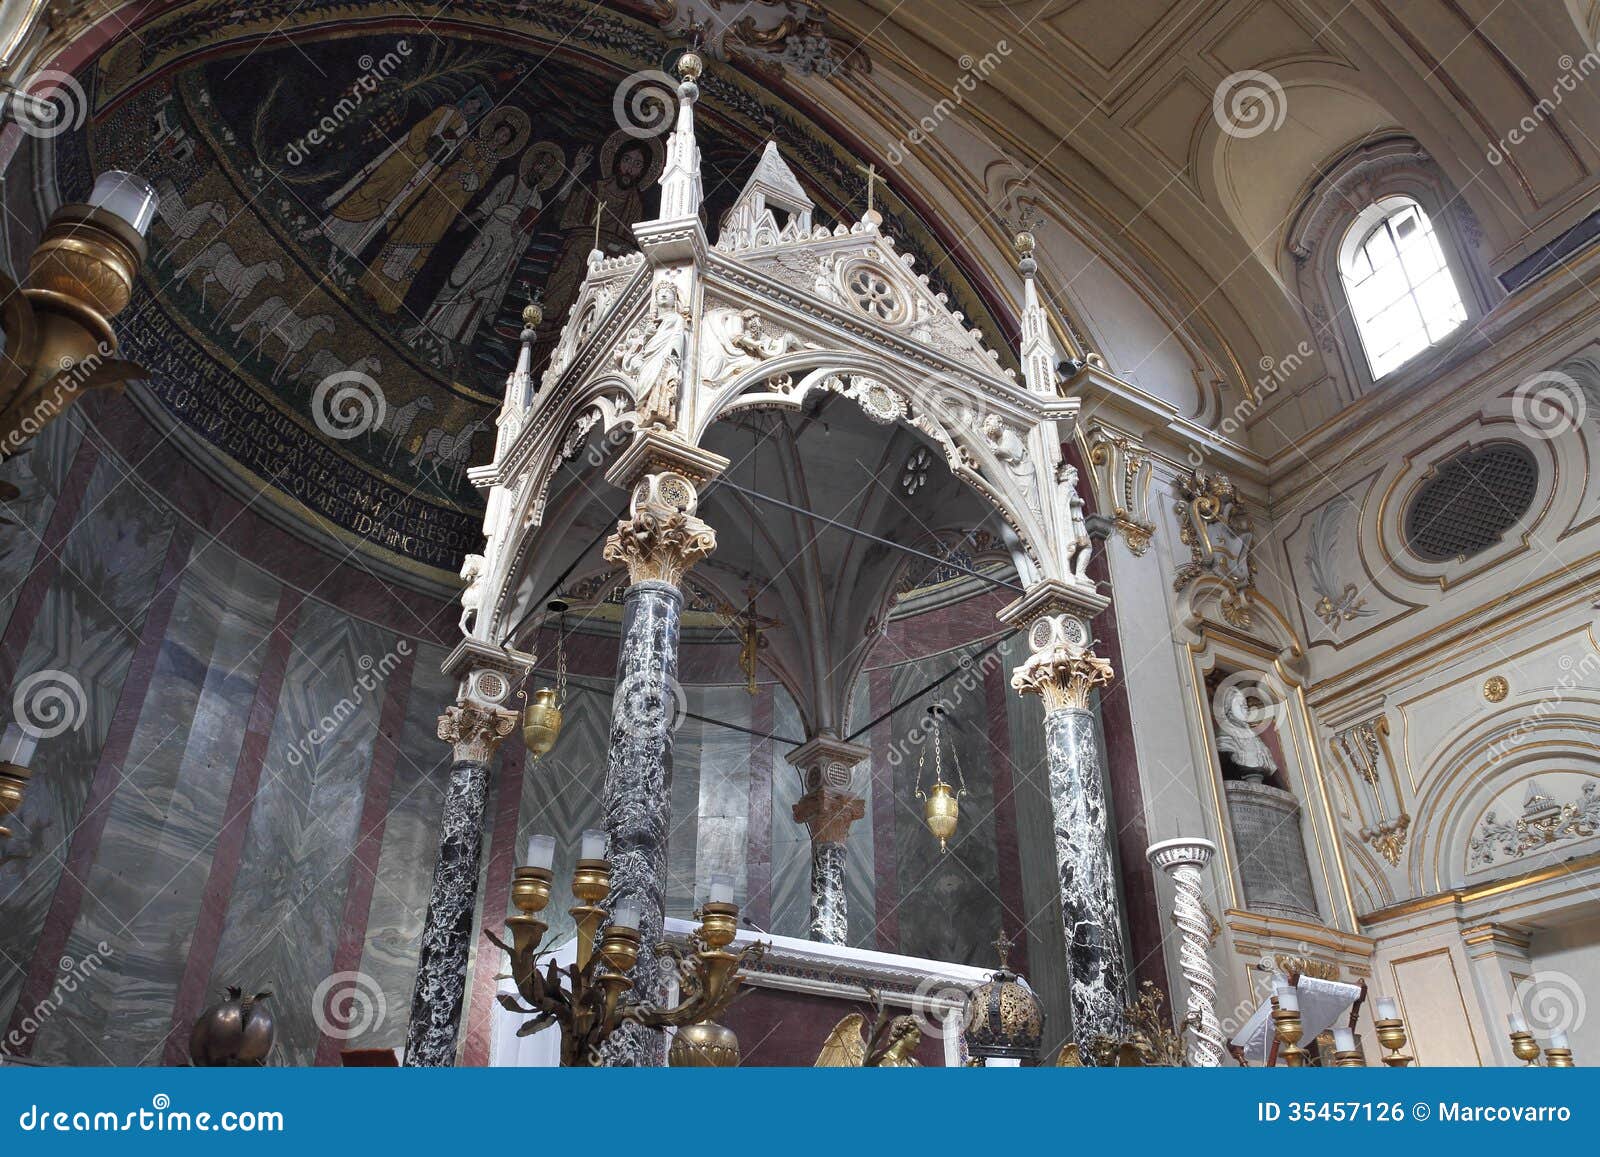 st. cecilia church in rome